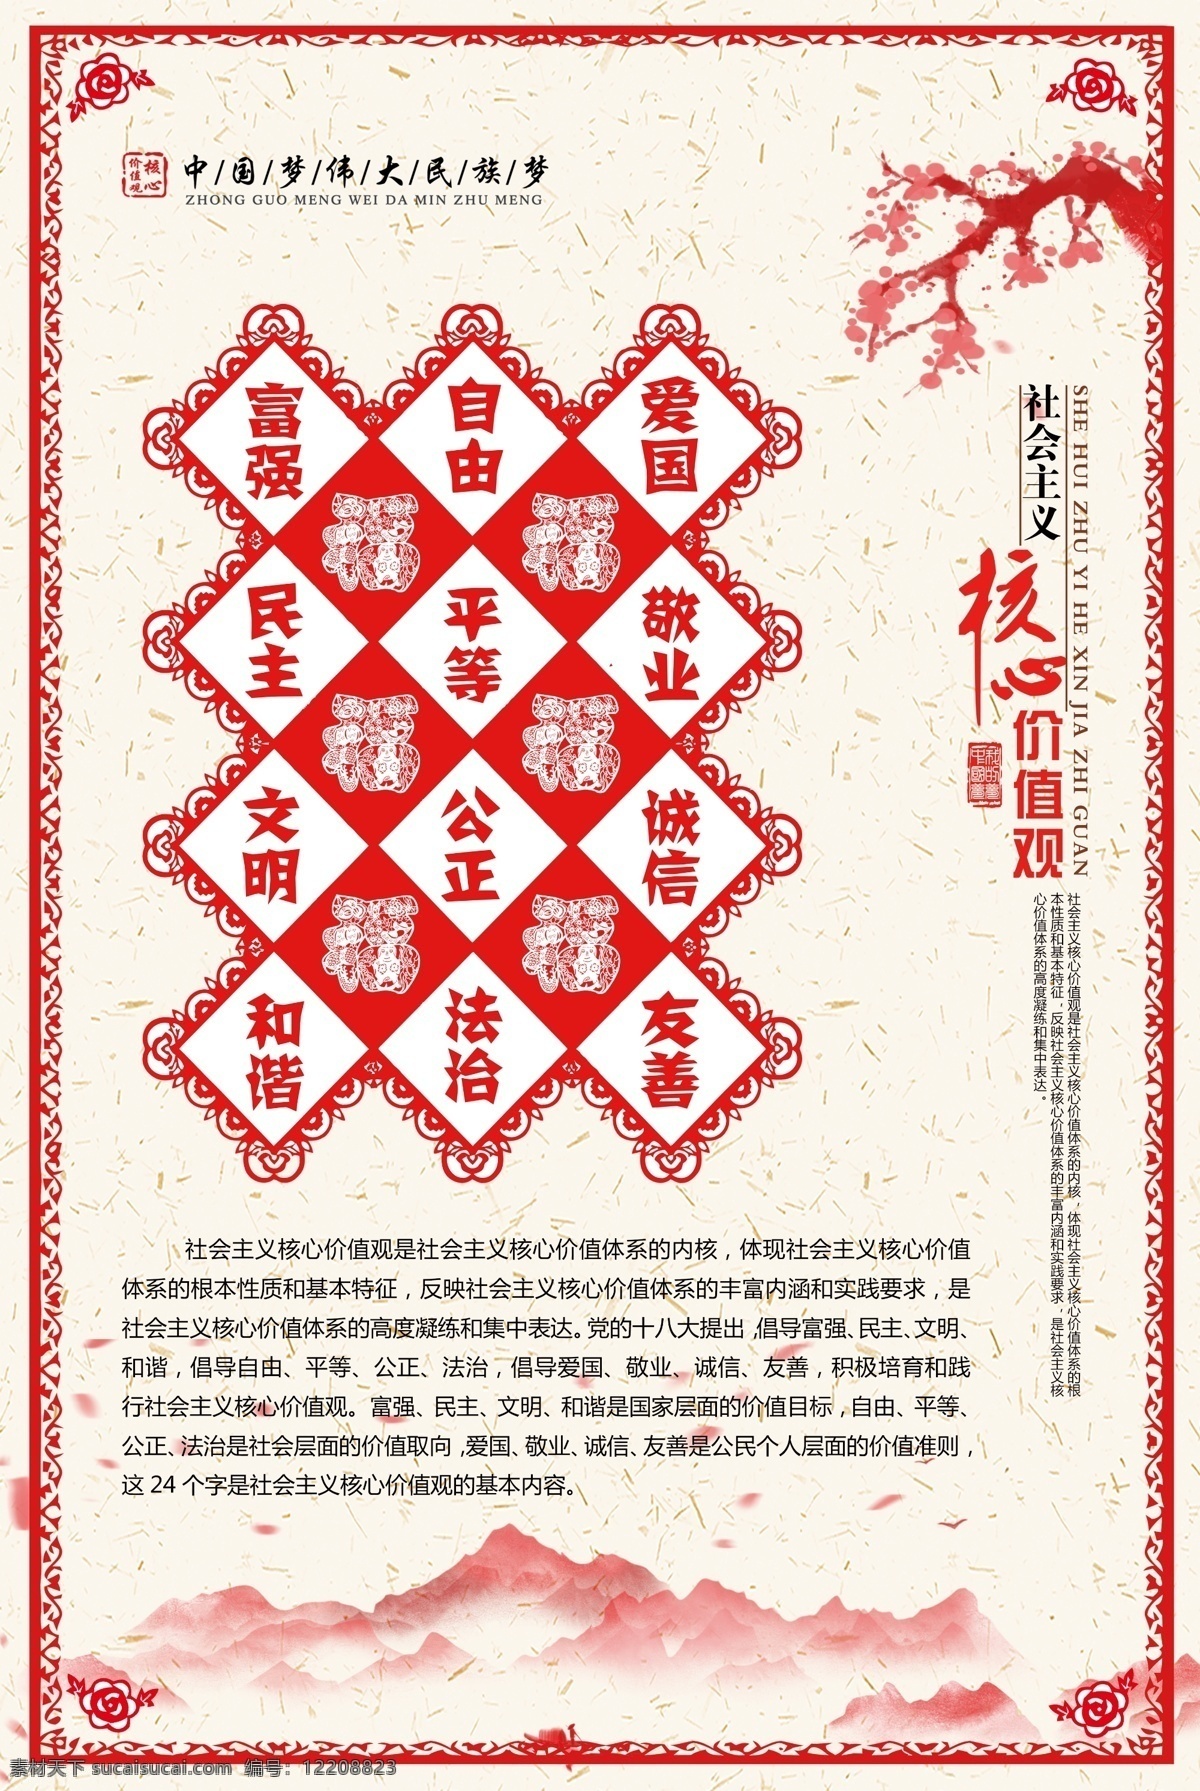 中国 梦 社会 和谐 标语 红色 海报 展板 中国梦